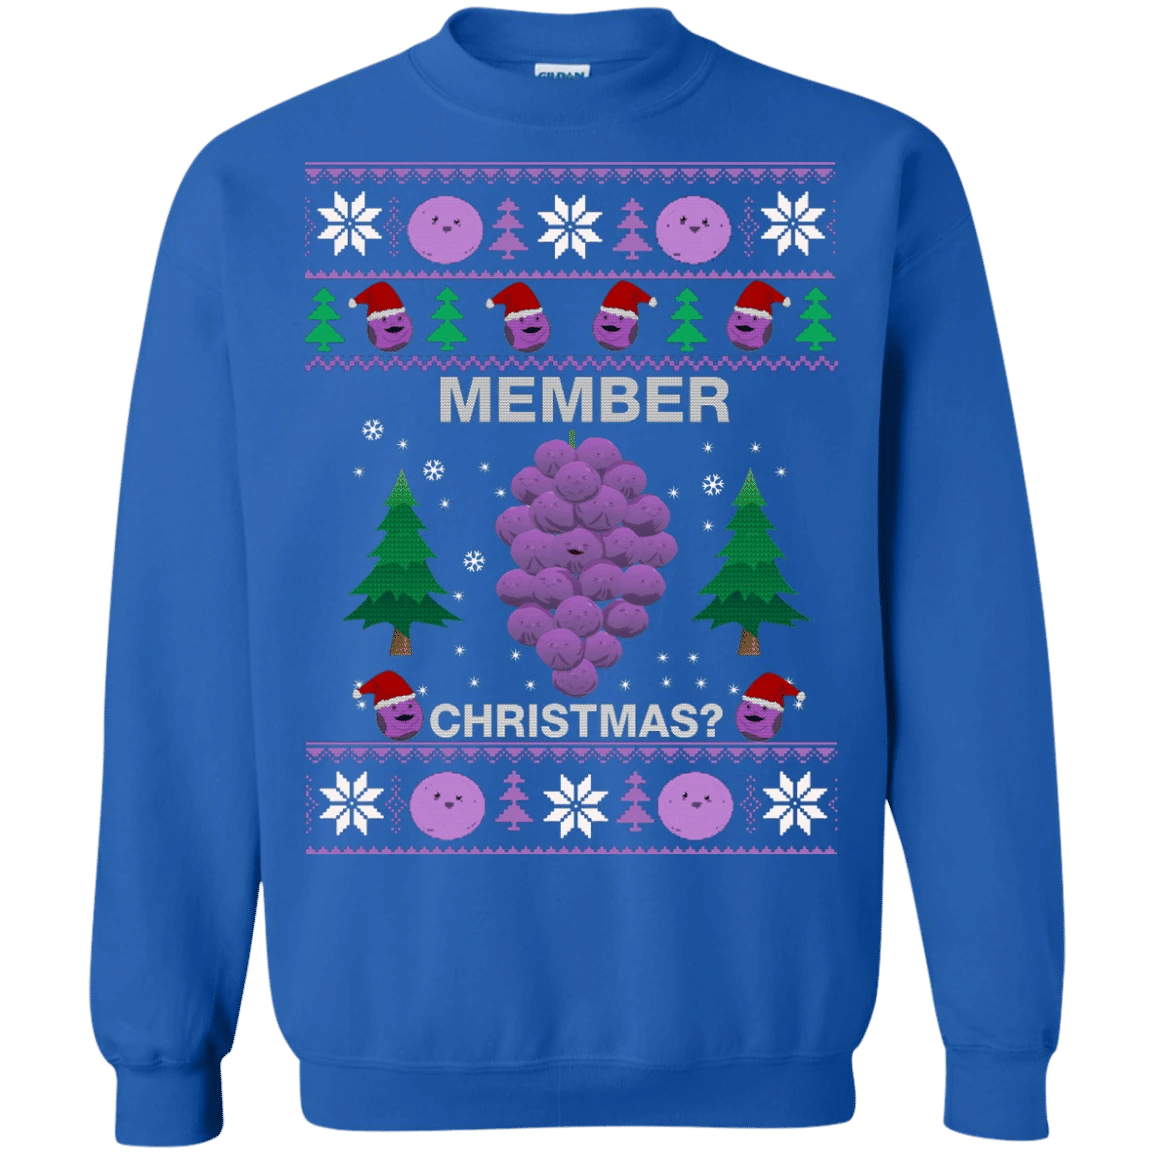 Member Berries Sweater Christmas sweatshirt -  Berries lover Style: Sweatshirt, Color: Royal